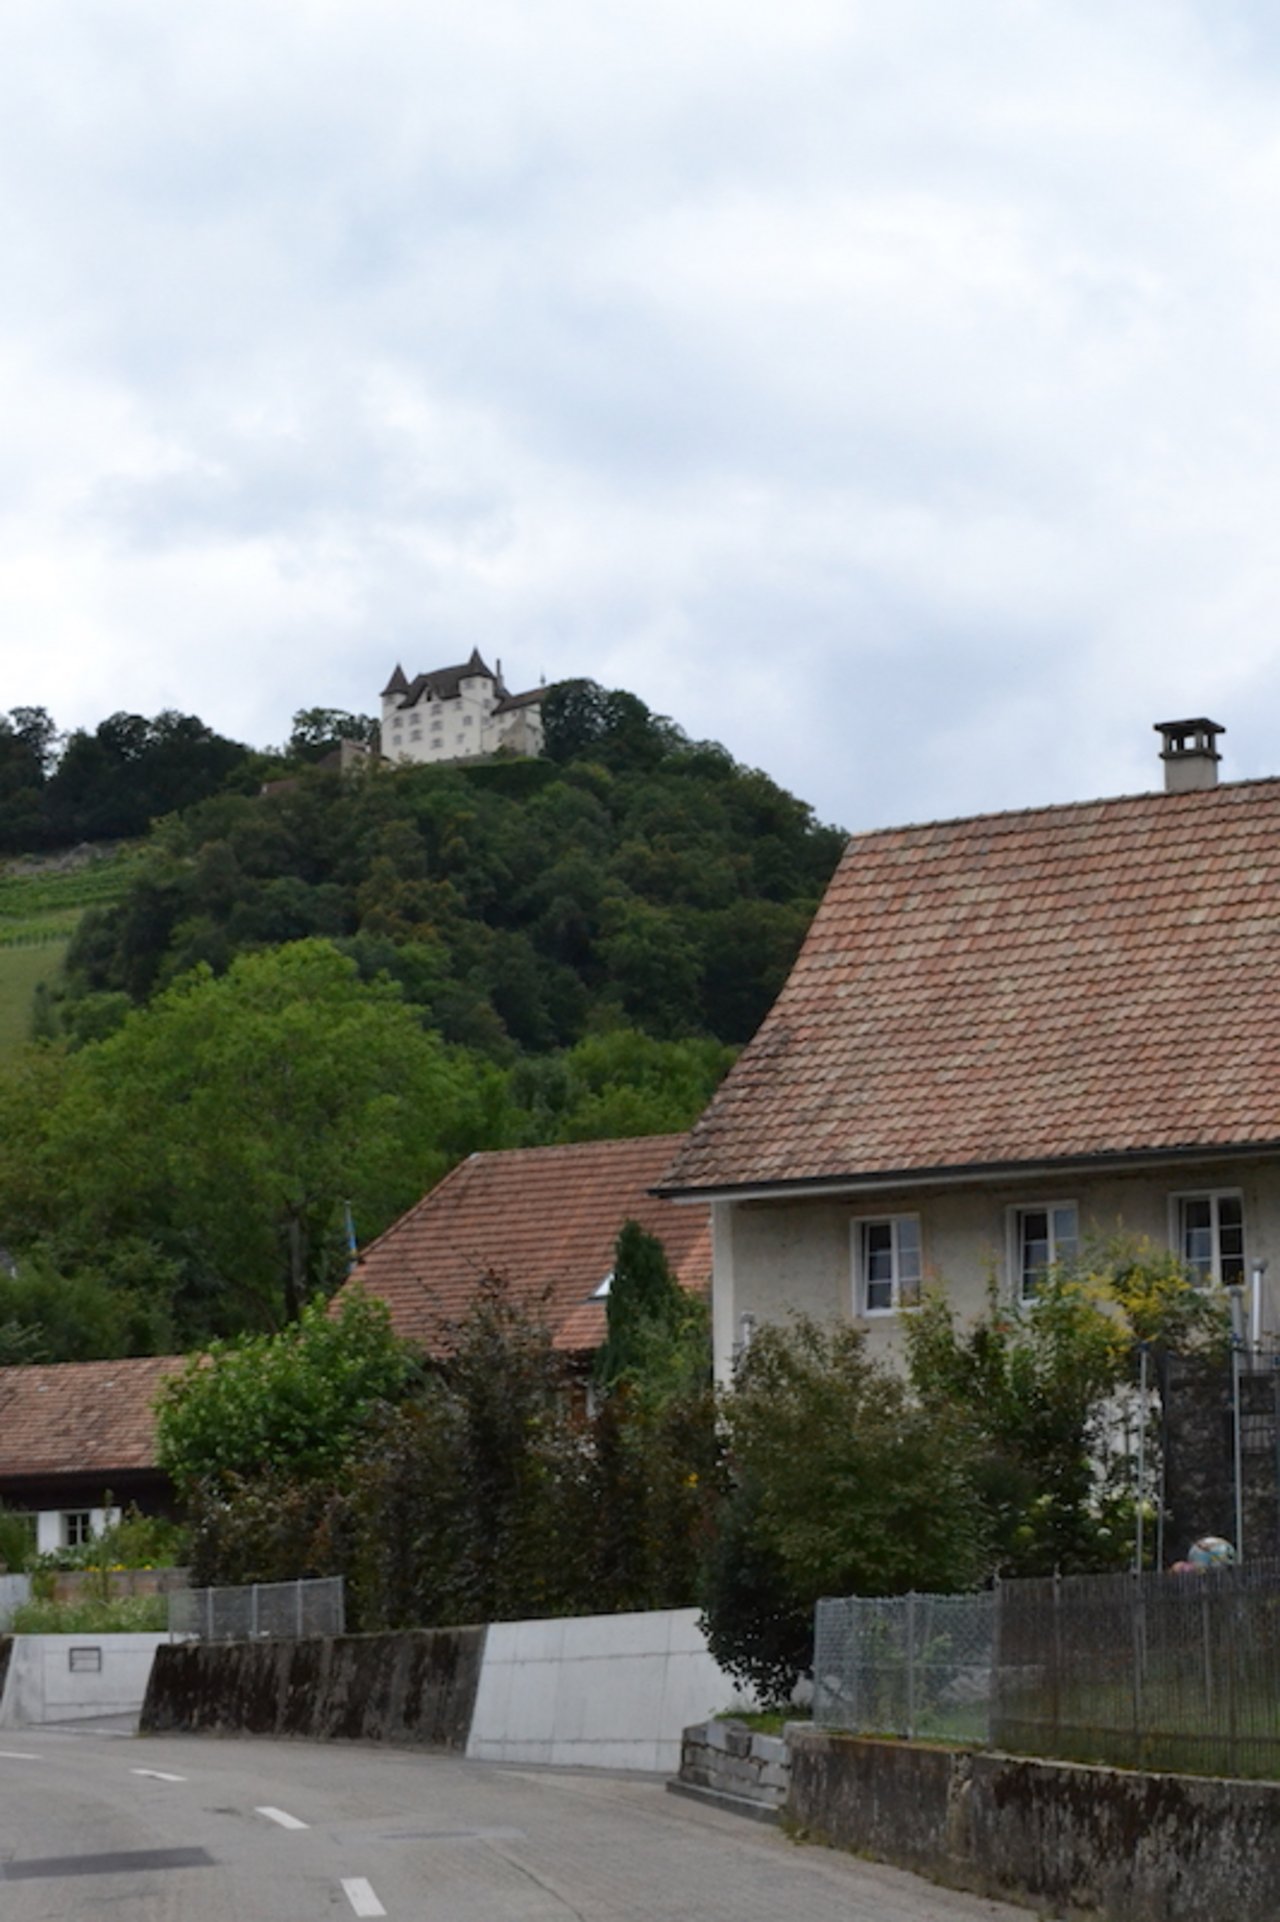 Hoch über Lostorf SO thront die Burg Wartenfels. Unterhalb dieser weitherum sichtbaren Burg wohnt die Familie Lisser.